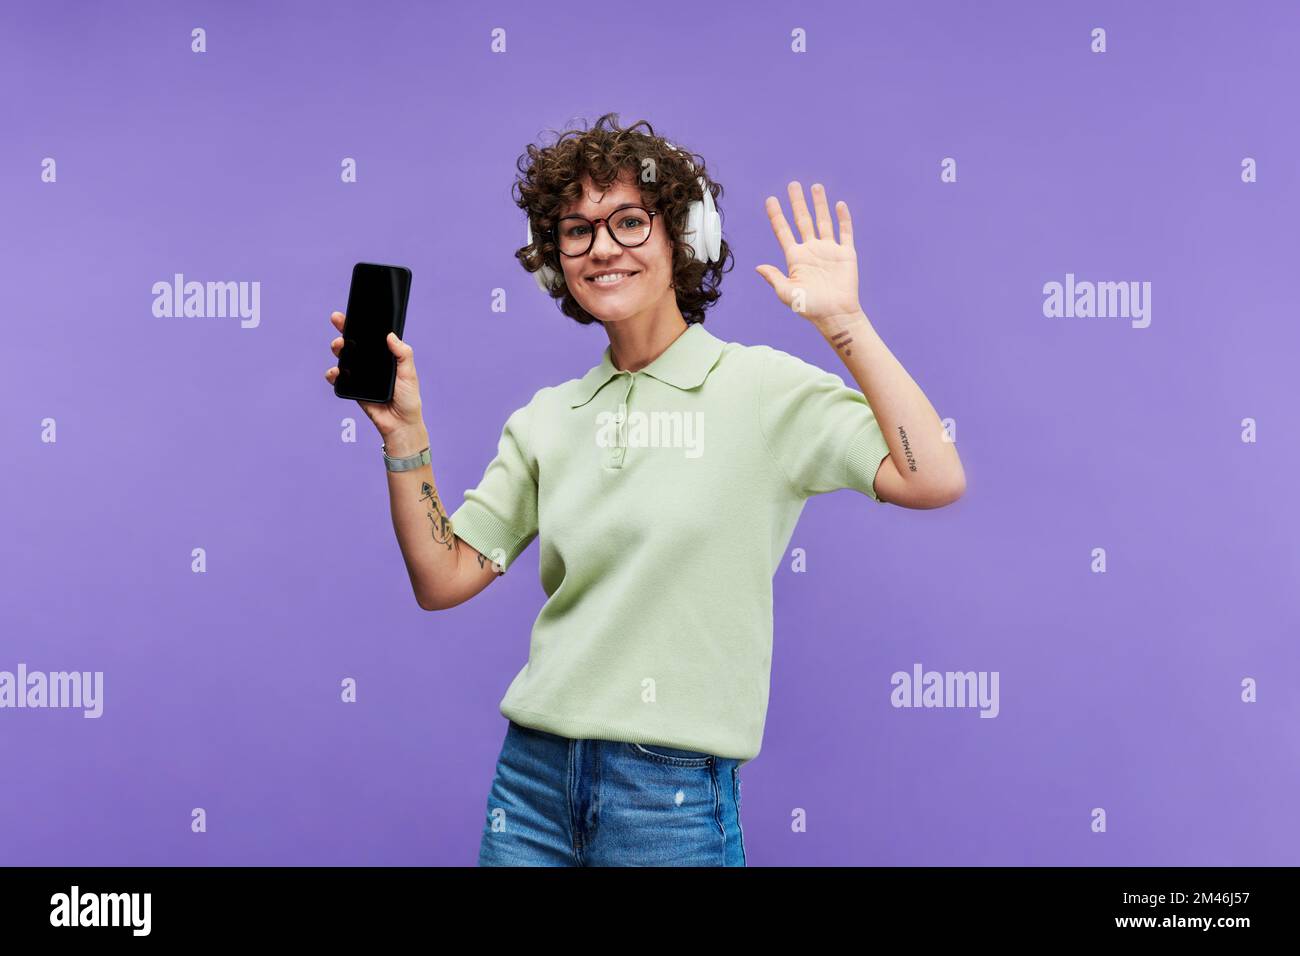 Junge fröhliche Frau mit Tattoos auf den Armen, die energiegeladene Musik über Kopfhörer hört und vor der Kamera auf violettem Hintergrund tanzt Stockfoto